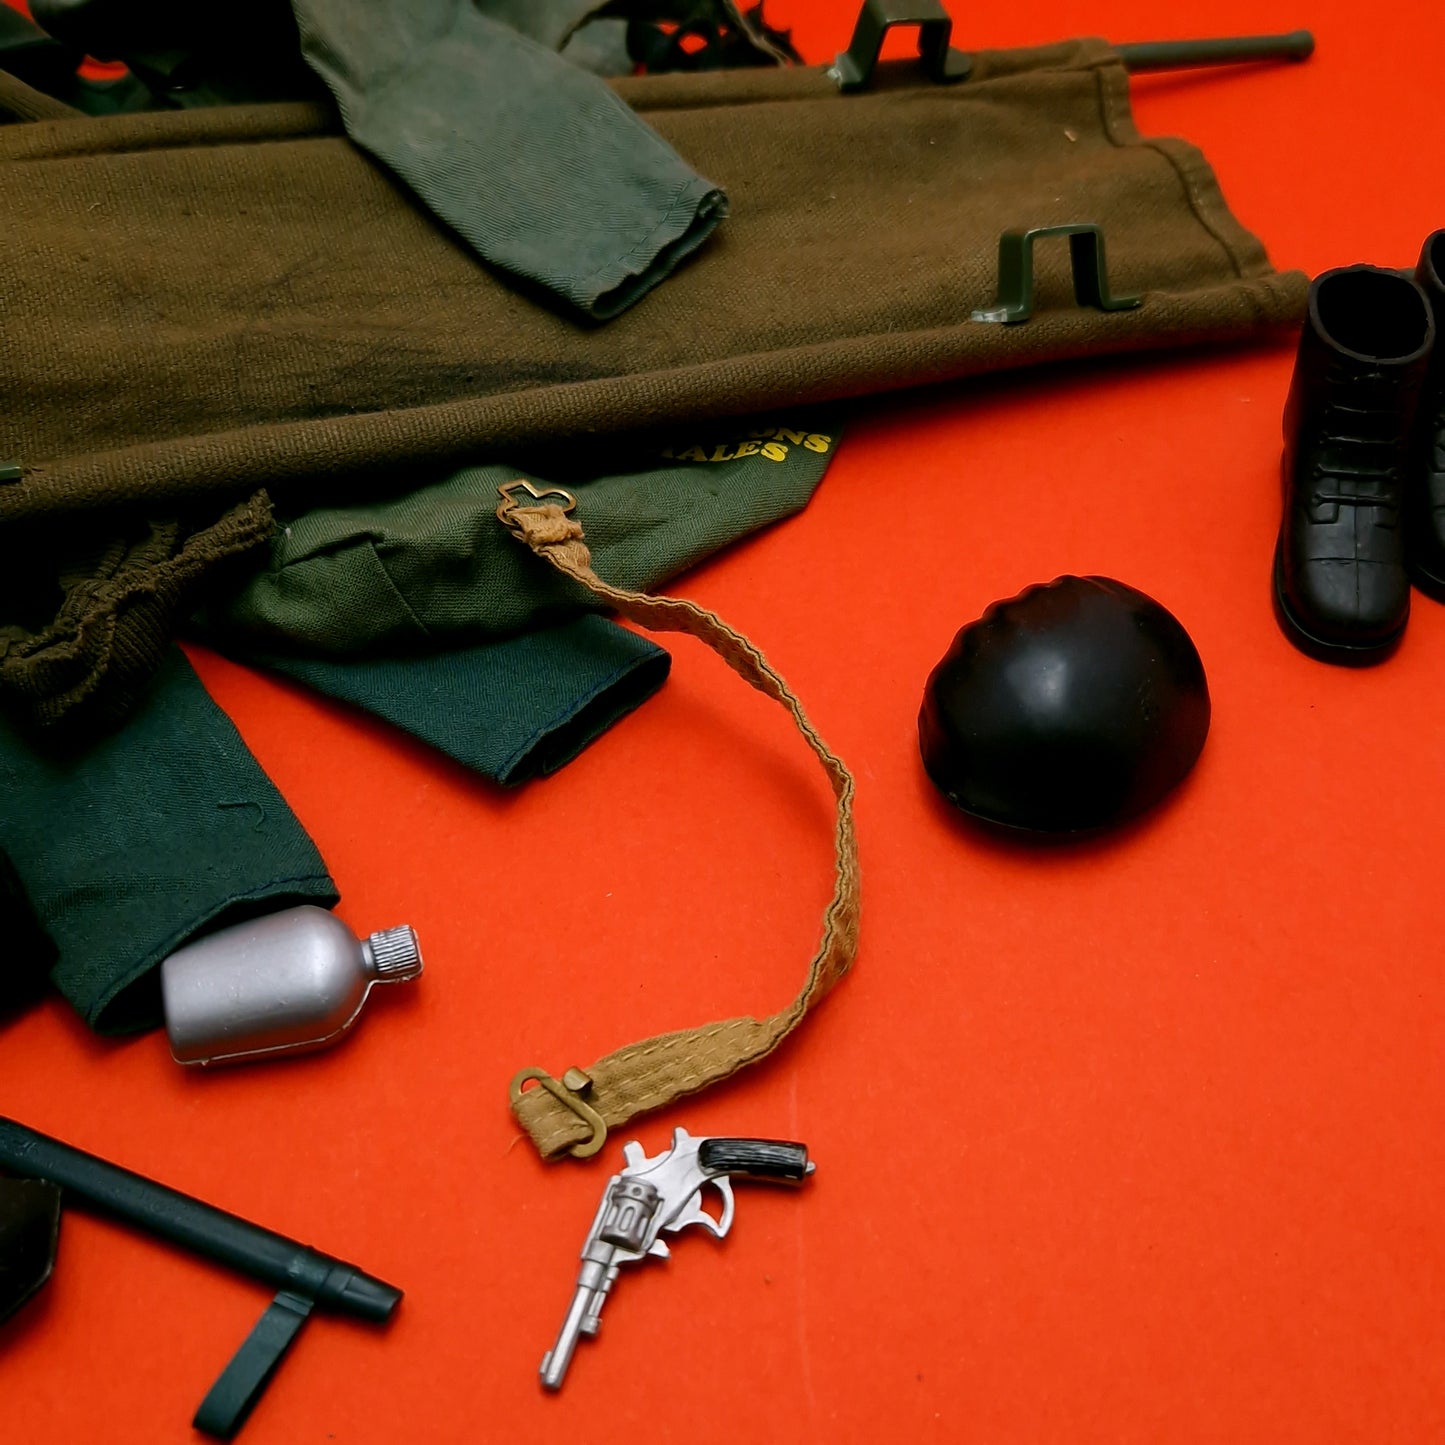 ACTION MAN ☆ SOLDIER FLOCK HEAD BUNDLE JOBLOT Dog & Accessories Uniform Parts 70's ☆ Vintage PALITOY Loose